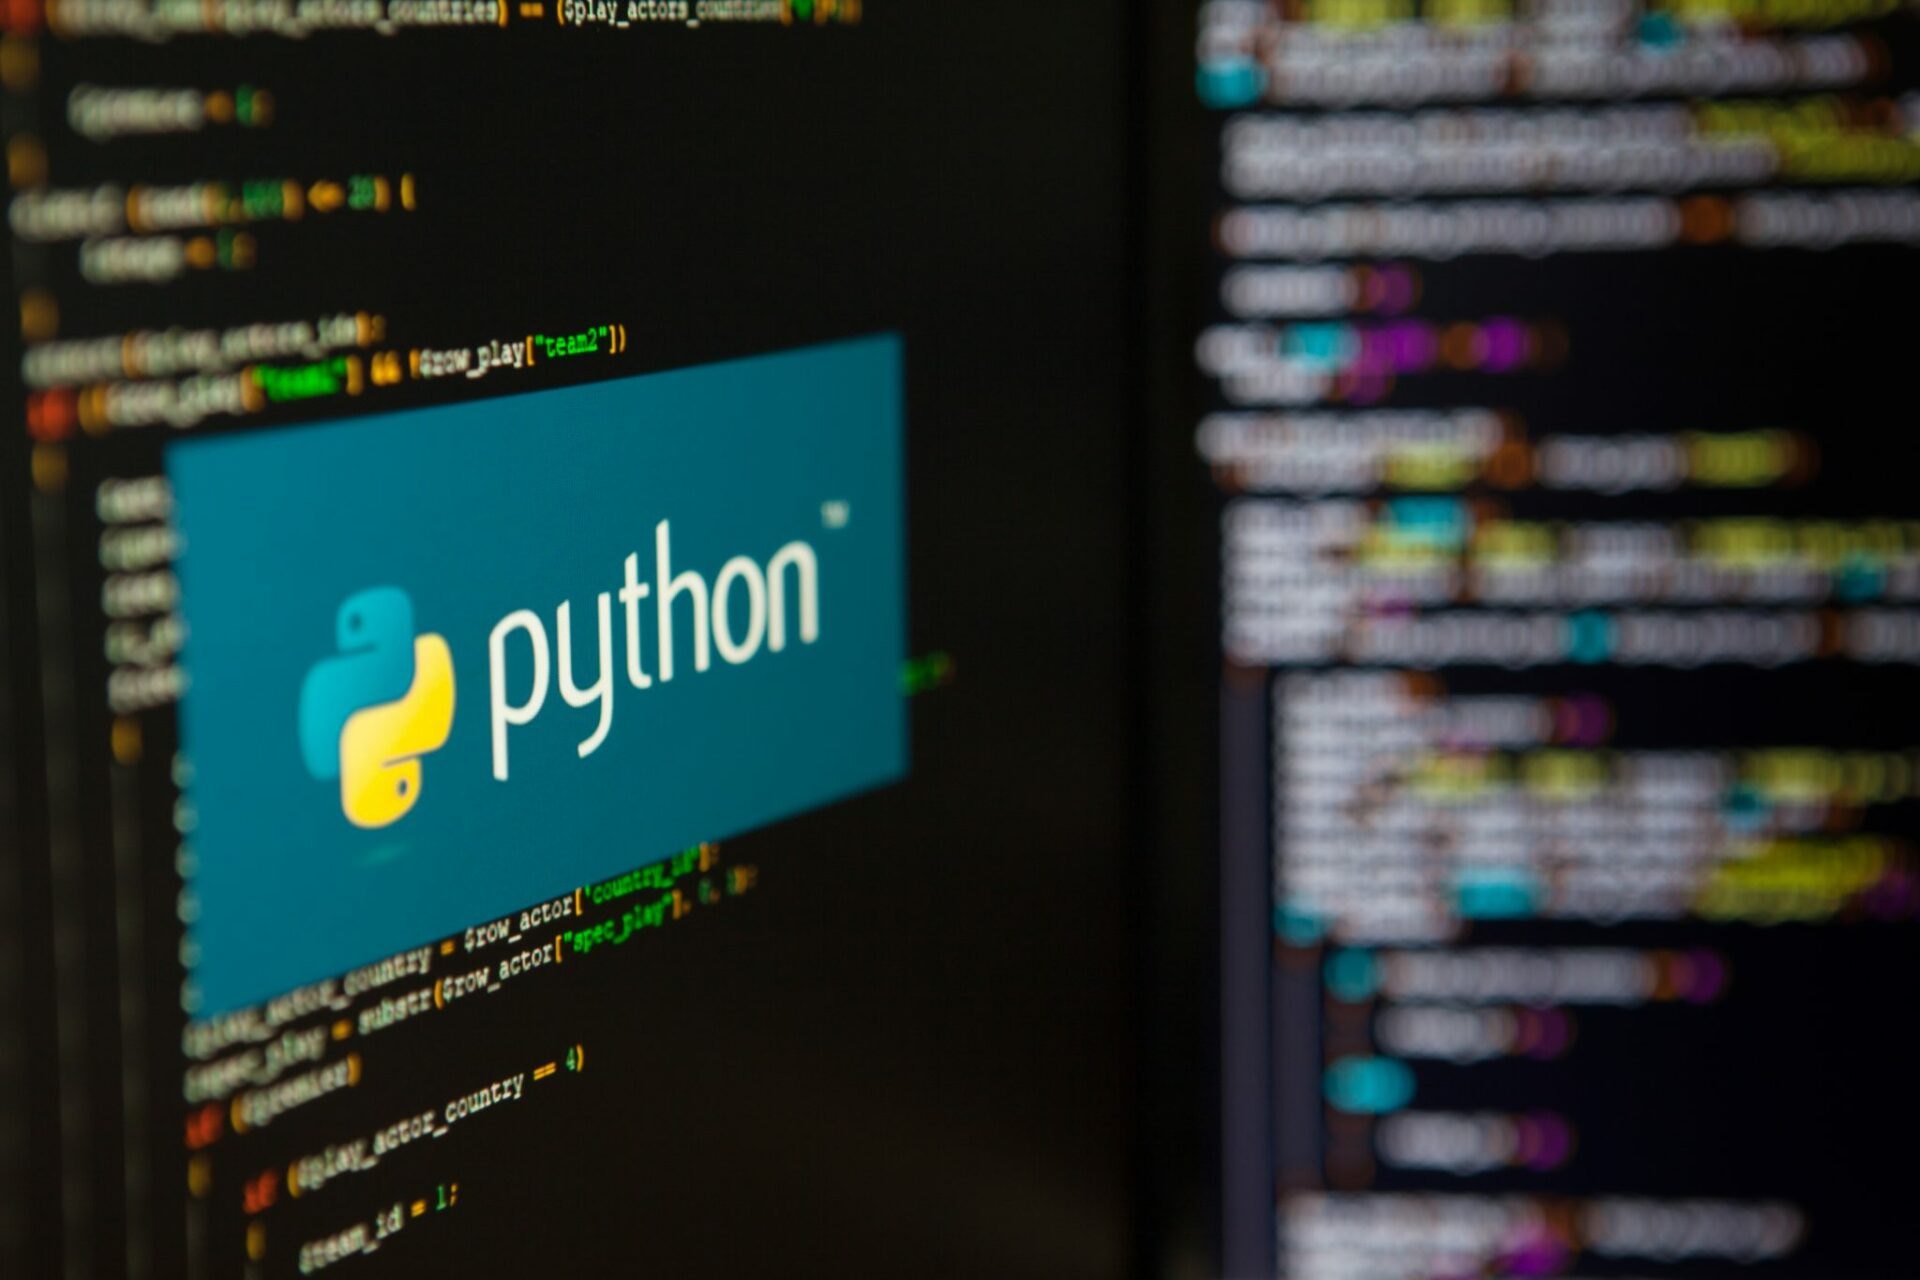 Python linguagem programação